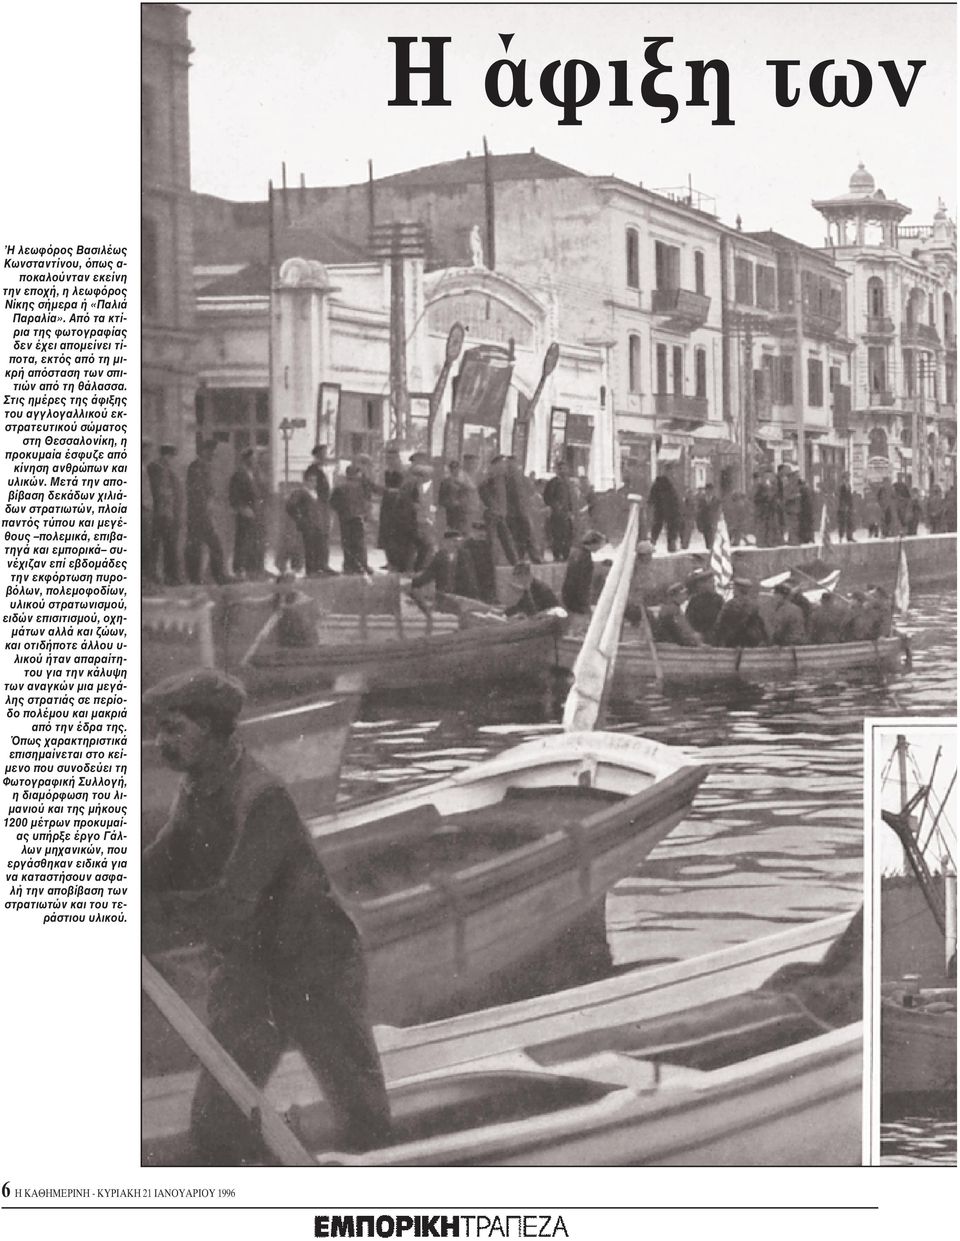 Στις ημέρες της άφιξης του αγγλογαλλικού εκστρατευτικού σώματος στη Θεσσαλονίκη, η προκυμαία έσφυζε από κίνηση ανθρώπων και υλικών.